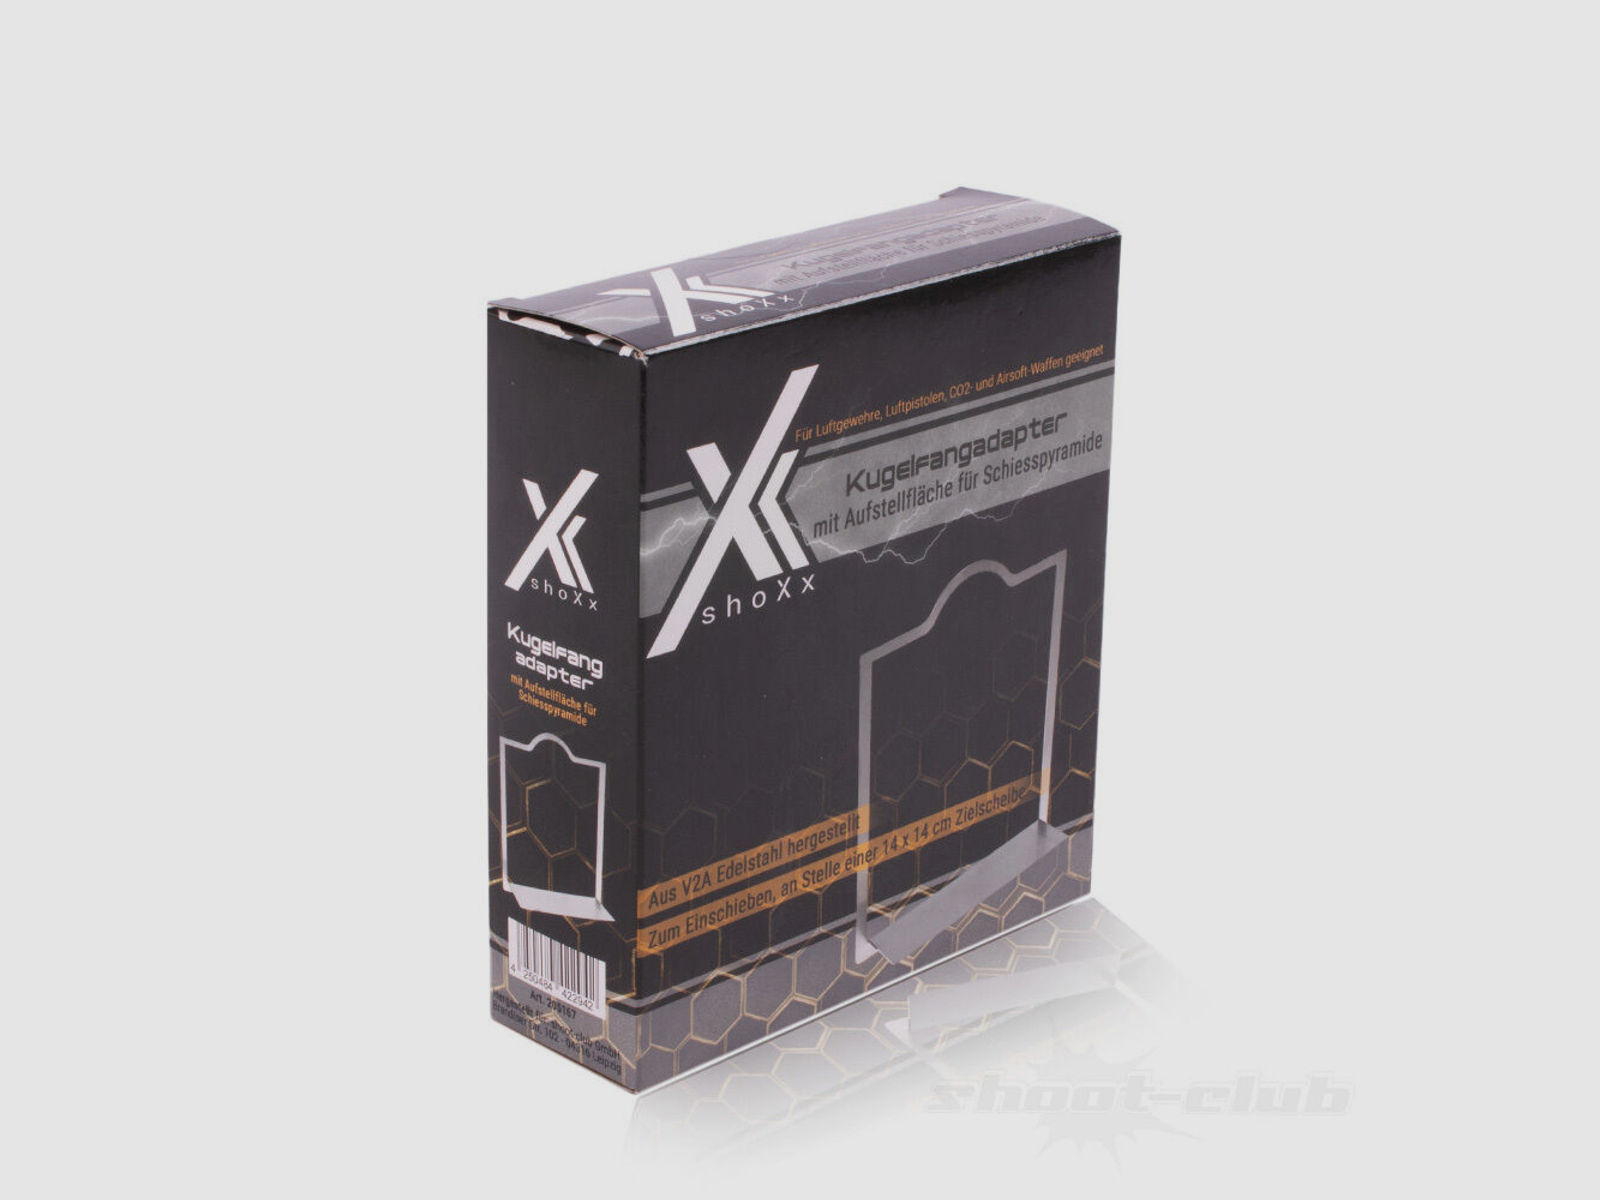 shoXx	 Adapter für Kugelfang 14x14 cm mit Aufstellfläche für